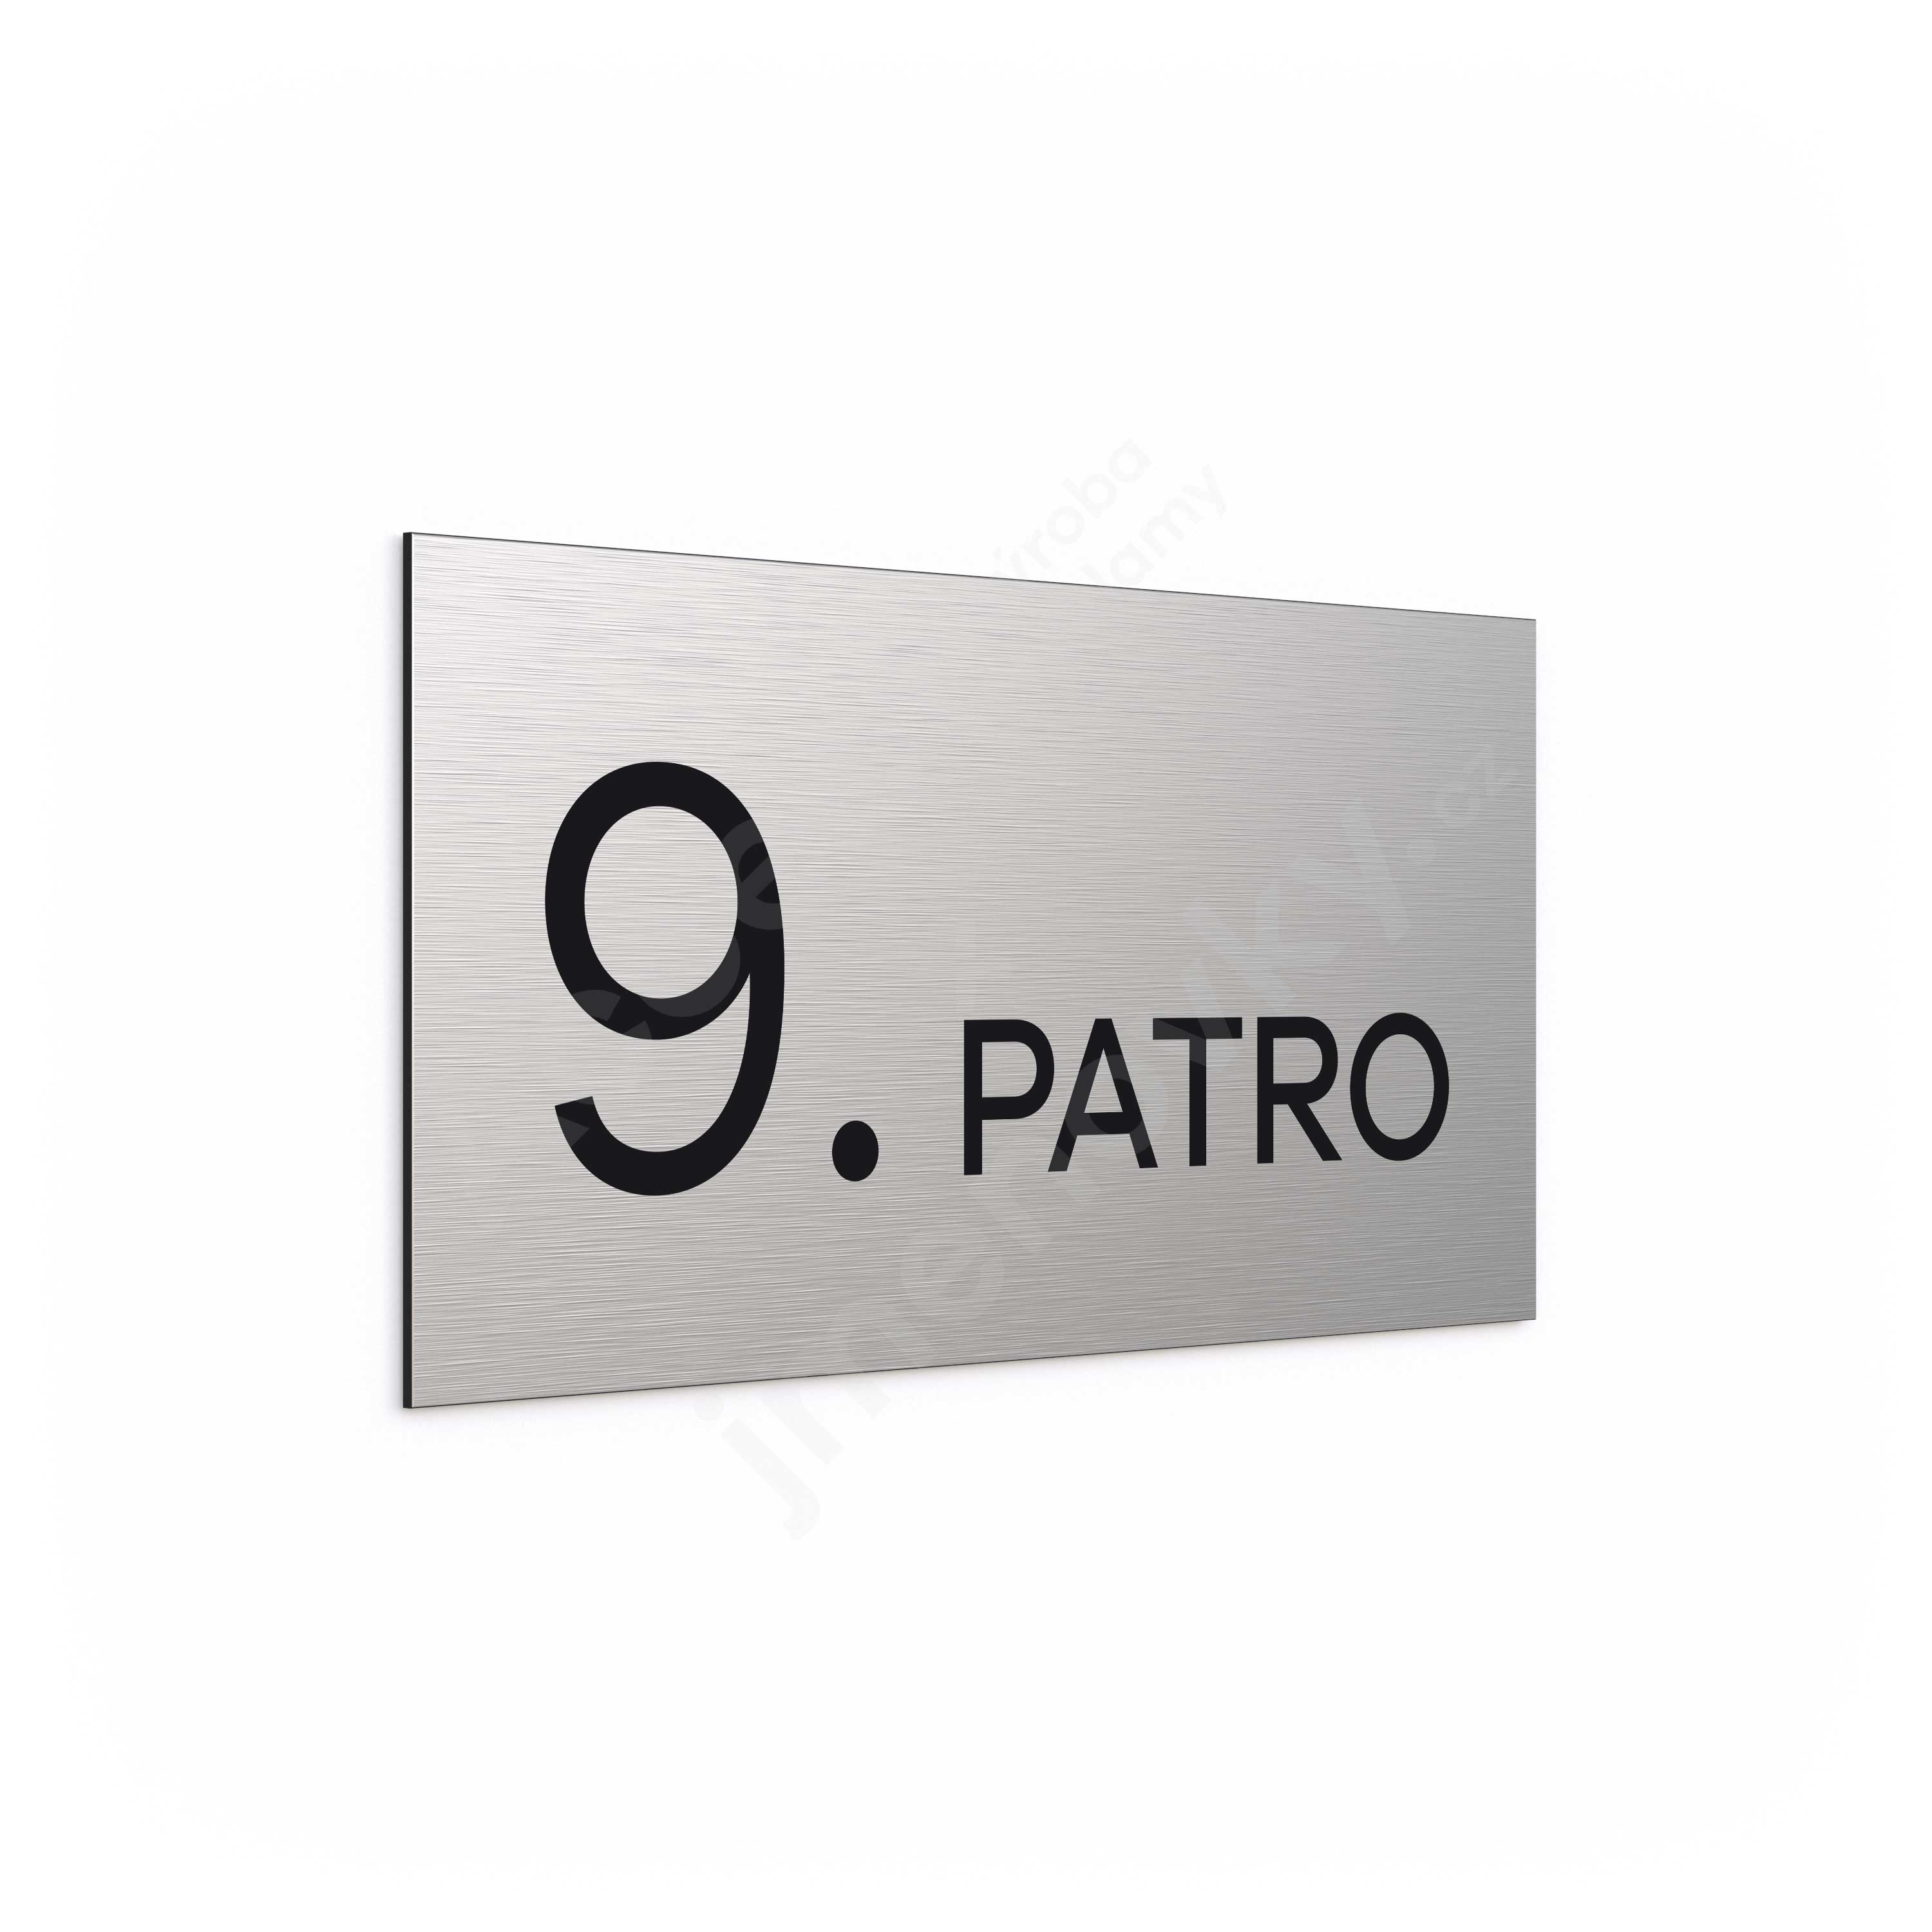 Oznaen podla "9. PATRO" (300 x 150 mm)